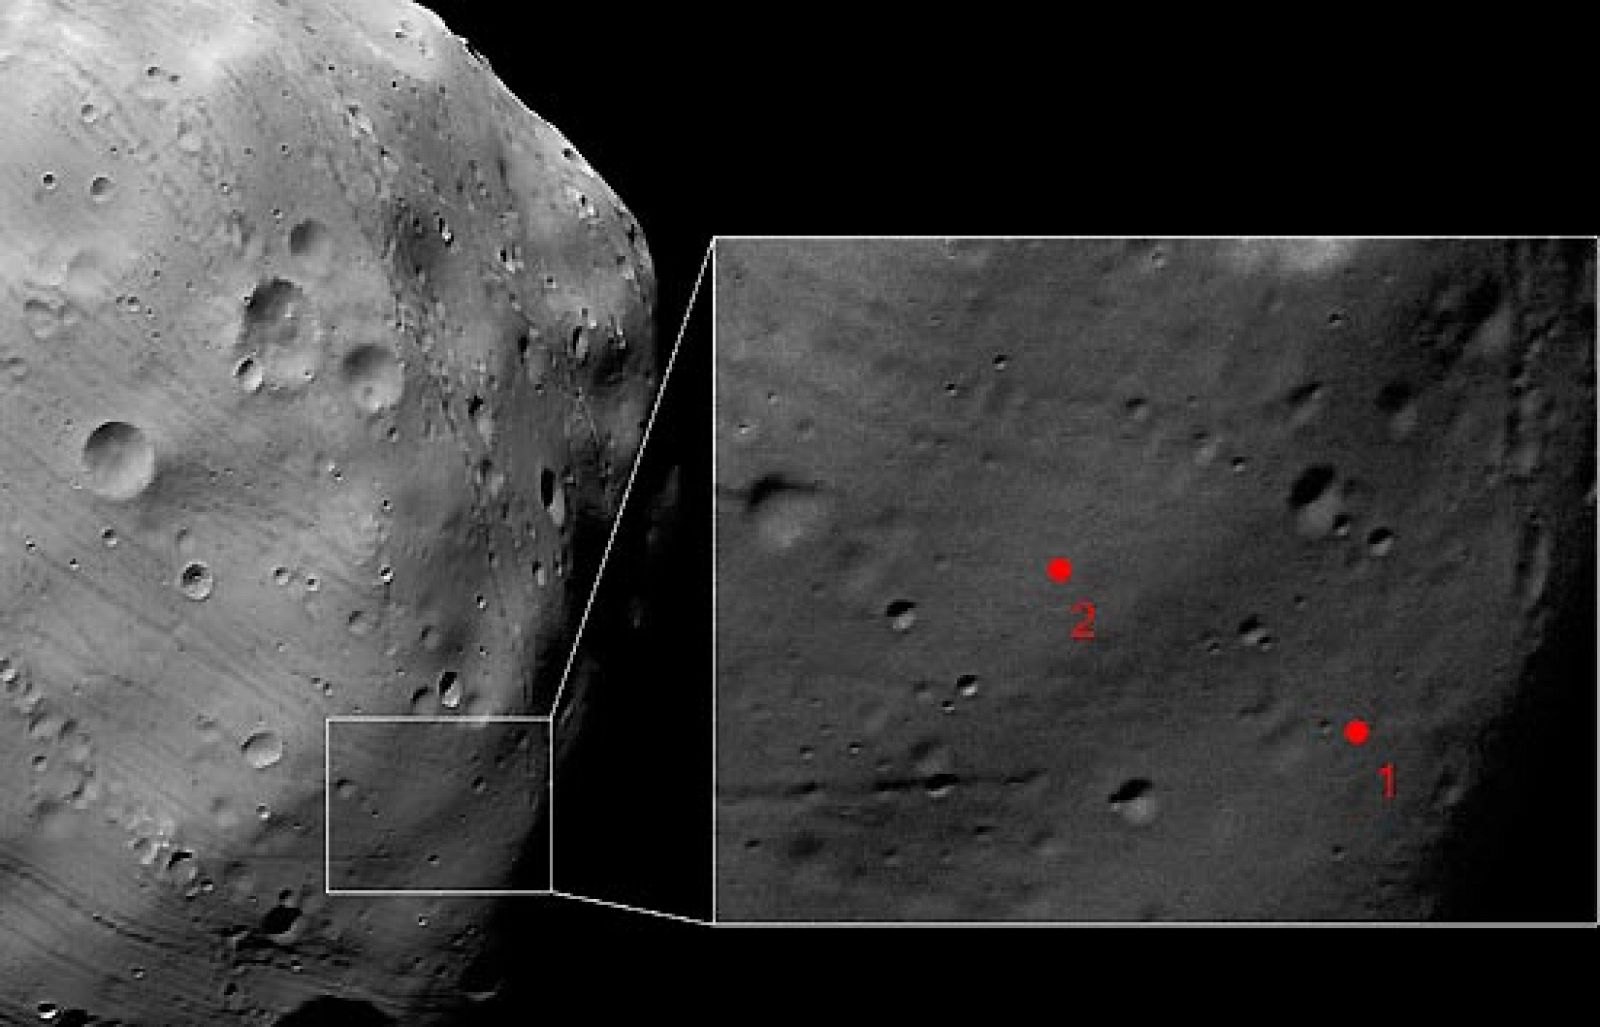 La sonda 'Mars Express' ha fotografiado a 'Phobos' la luna rocosa marciana con "exquisito detalle", según informa la Agencia Espacial Europea (ESA).